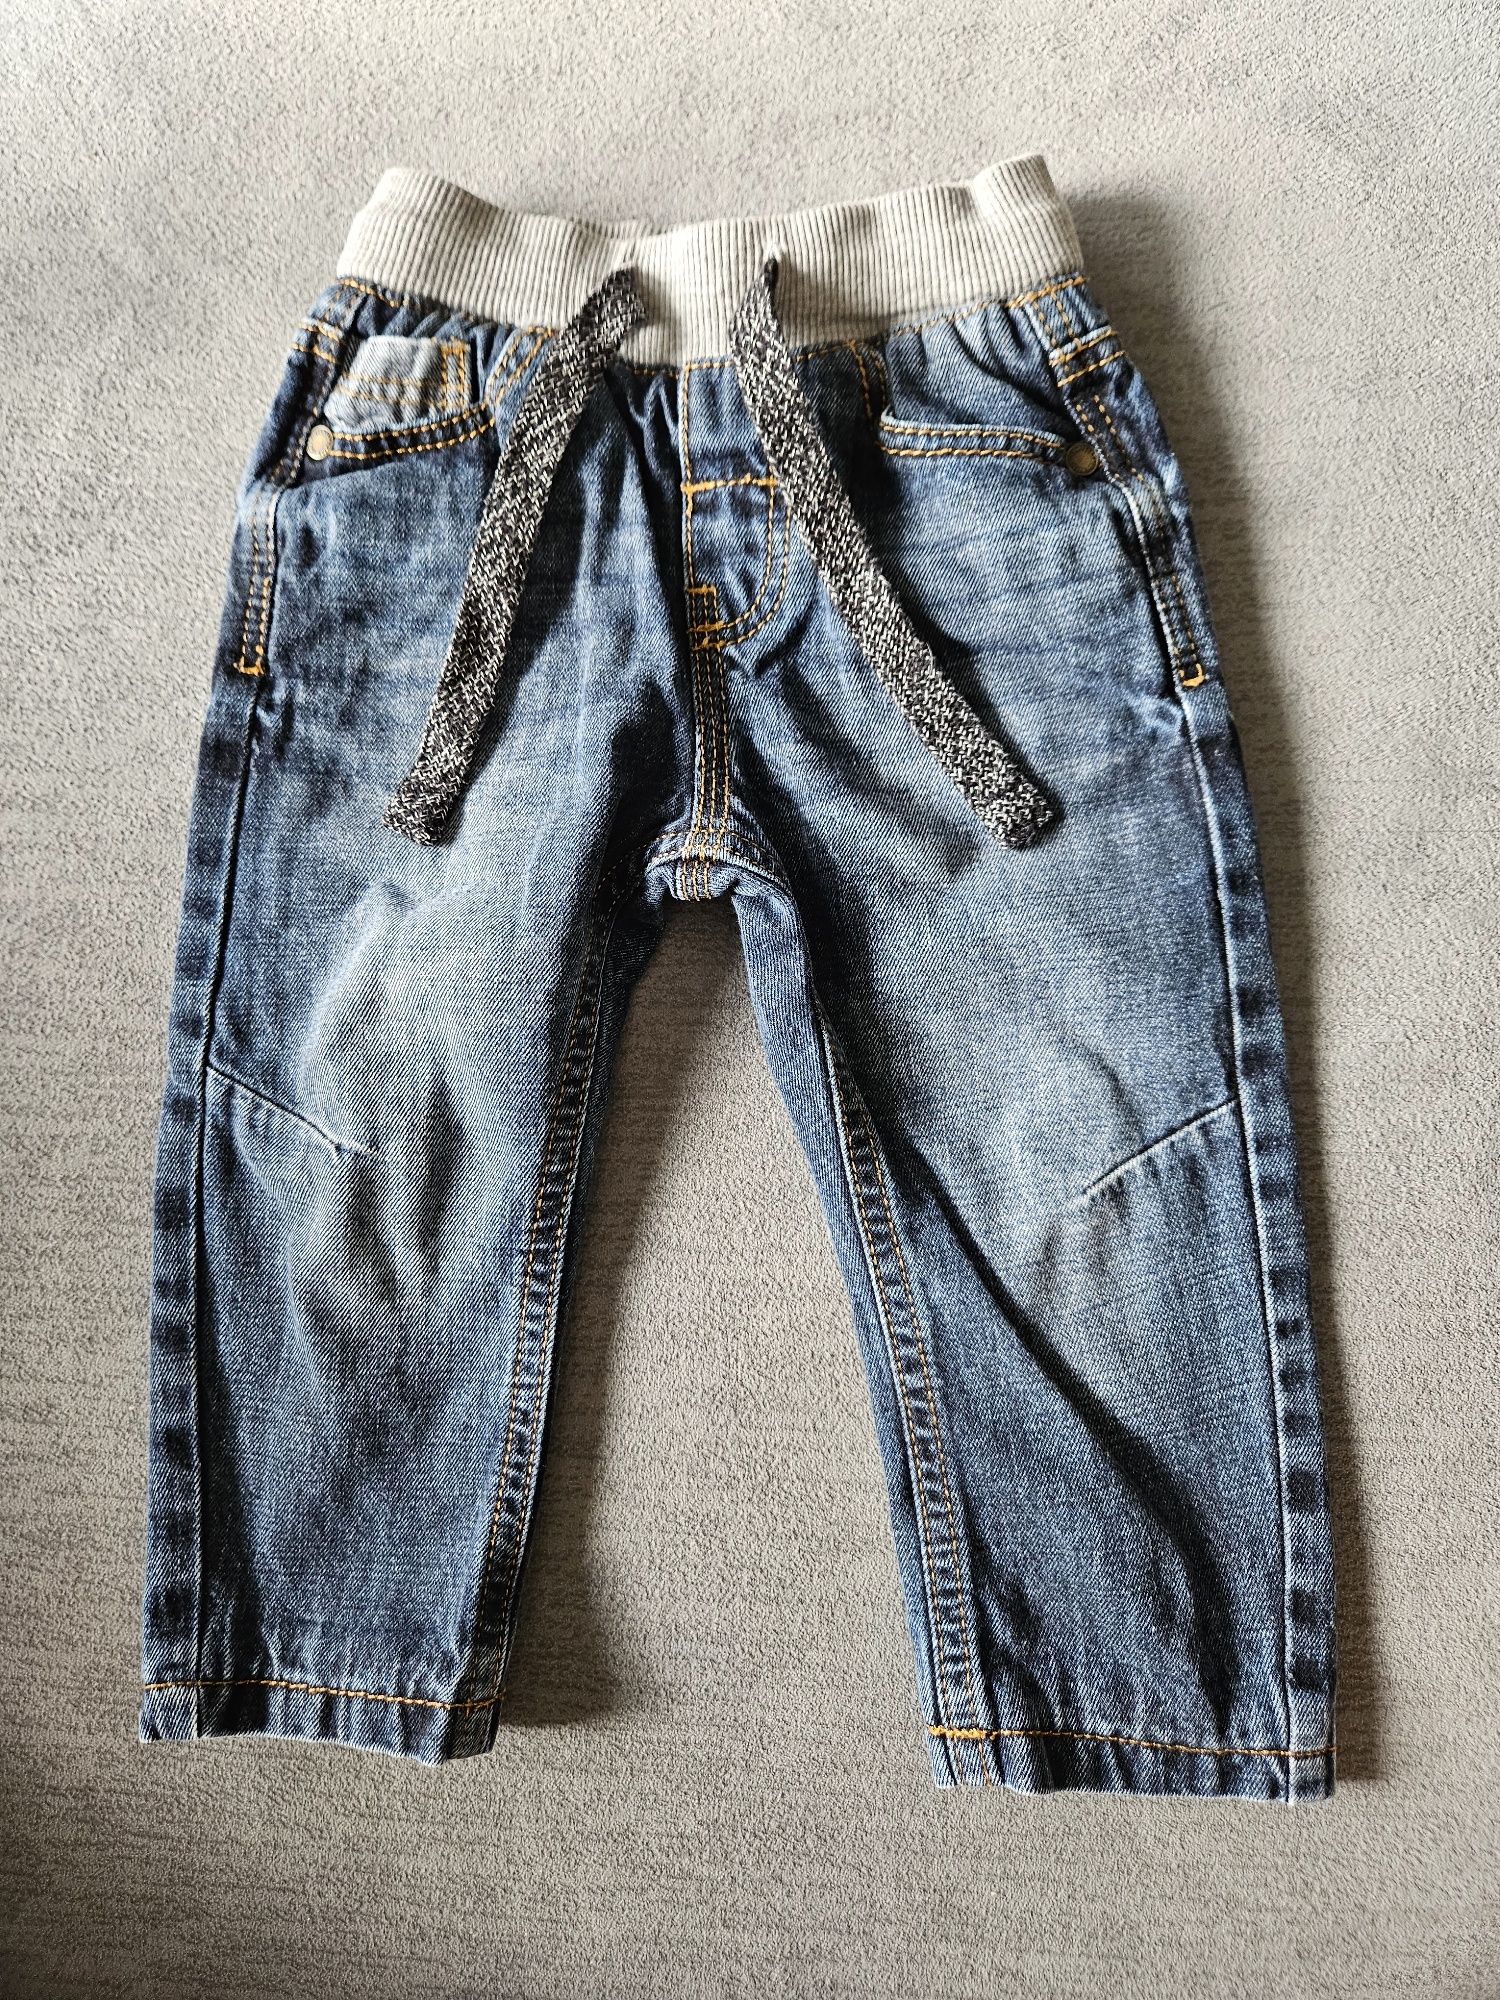 Chłopięce jeansy M&S. Rozmiar na 12-18 mscy